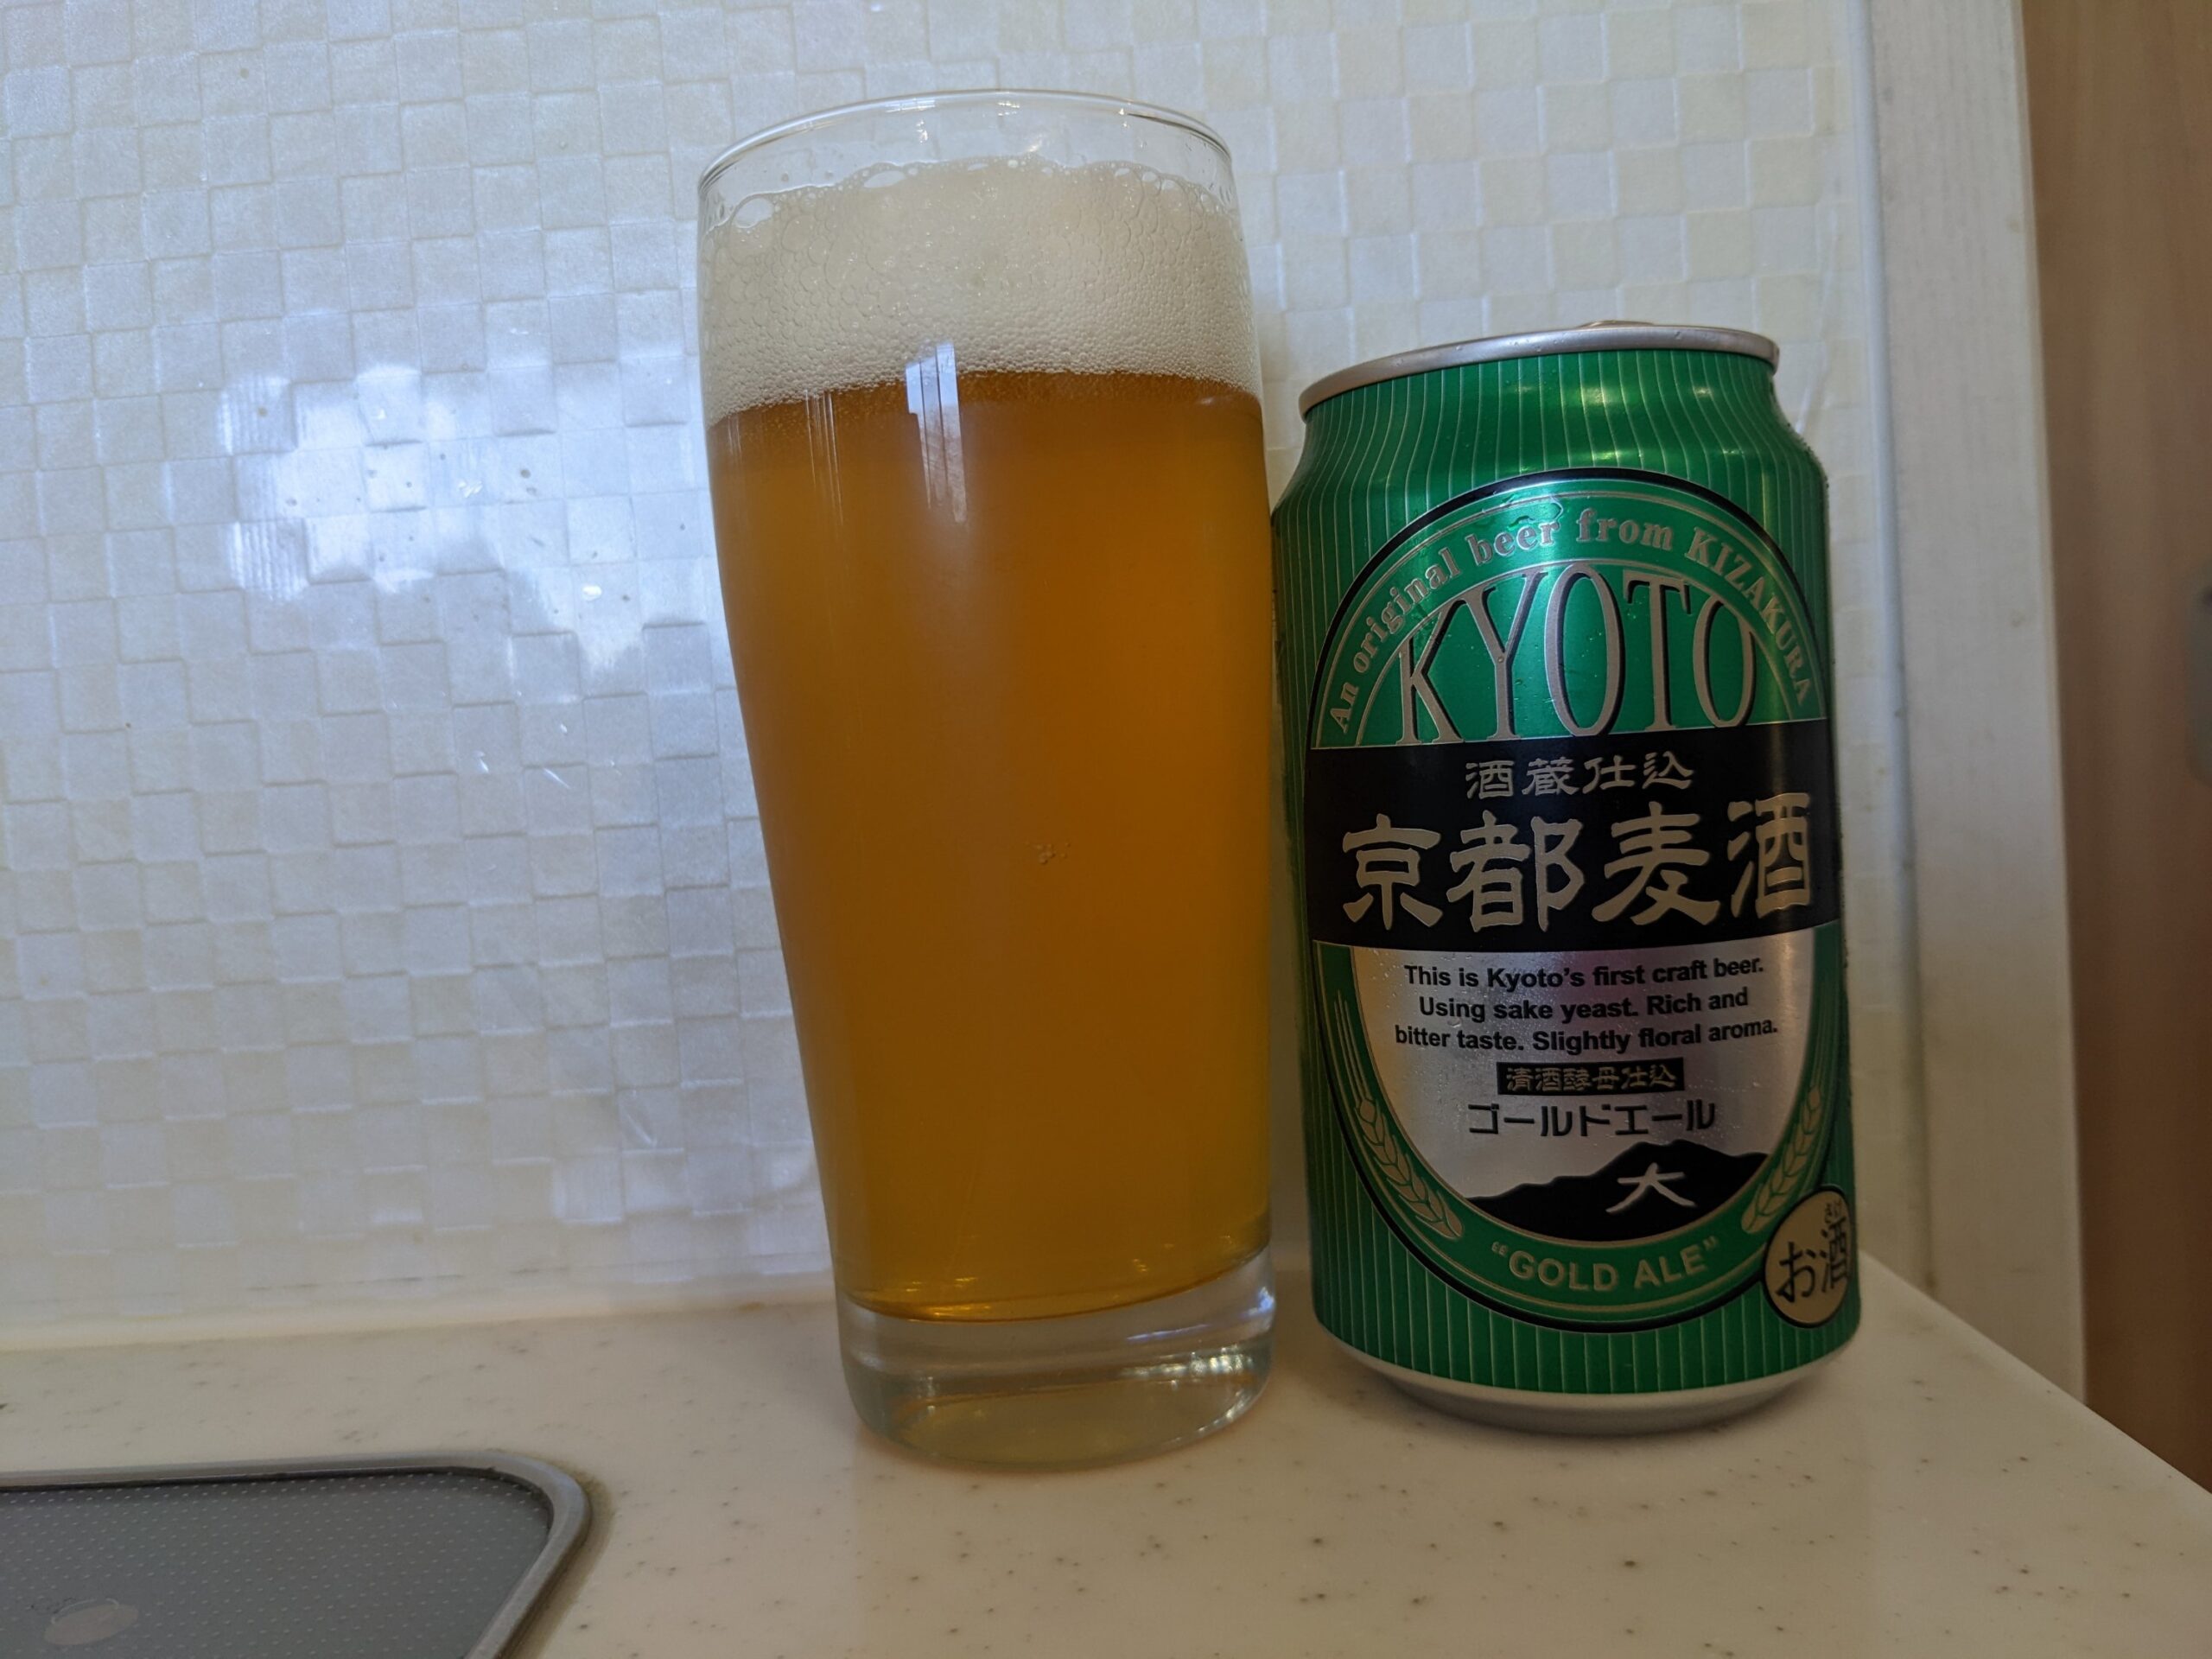 「京都麦酒ゴールドエール 」が注がれたグラスとその缶